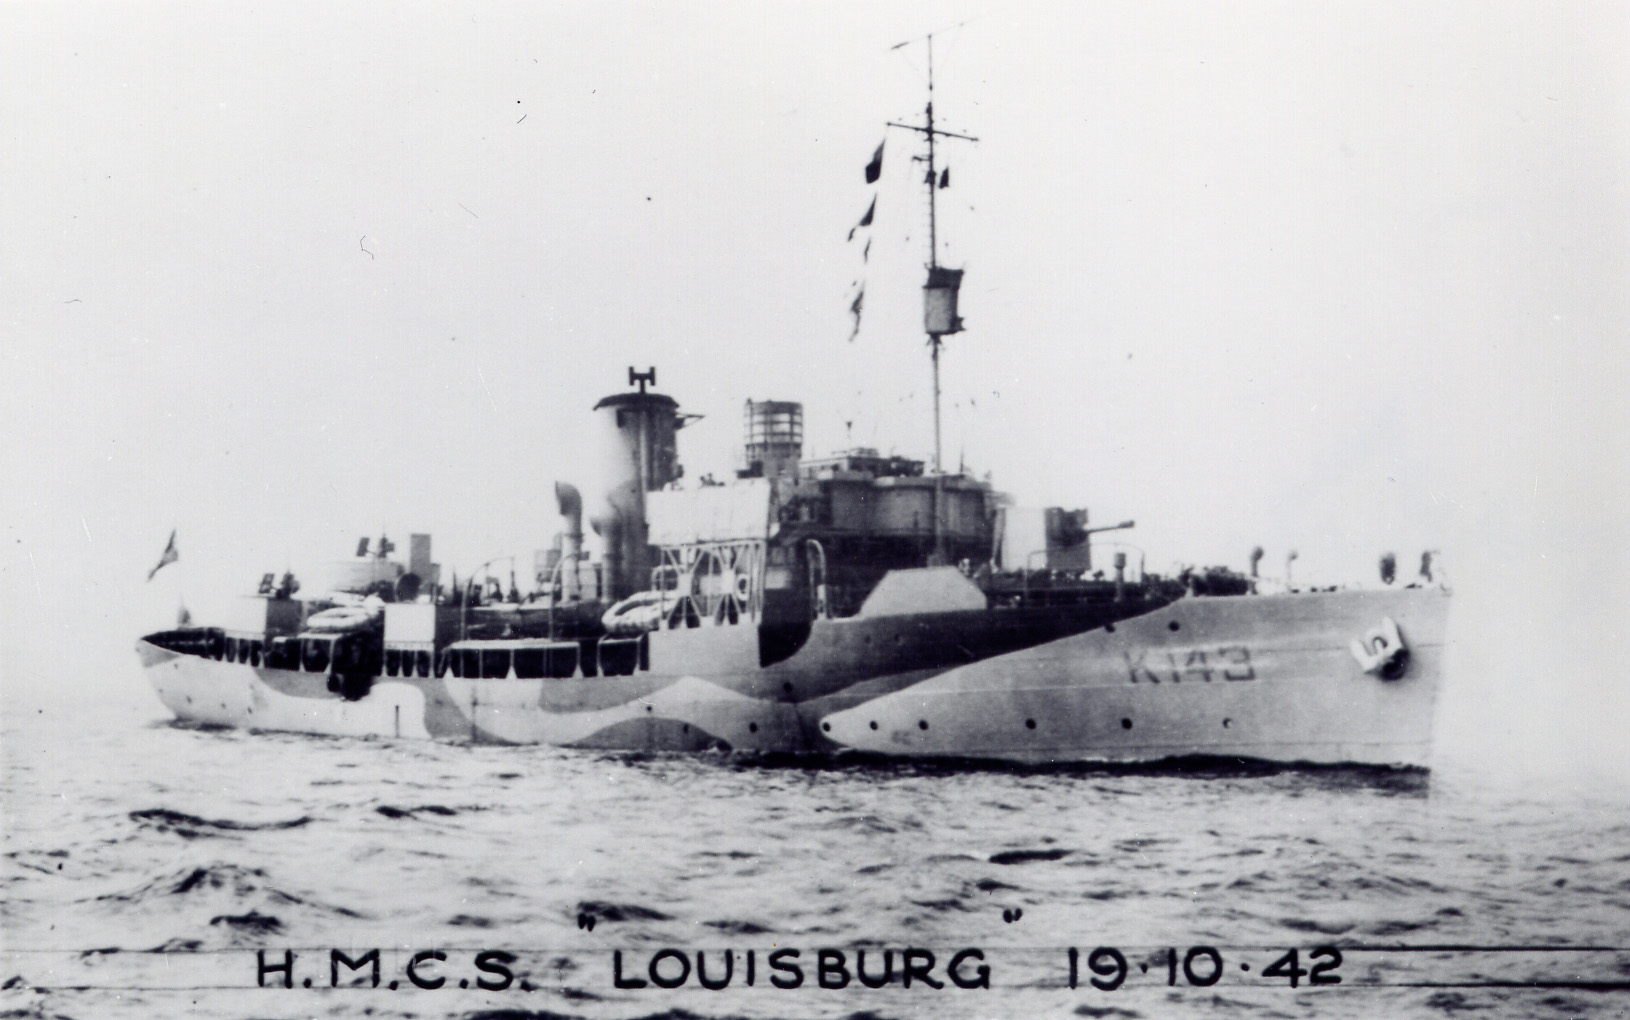 HMCS Louisburg